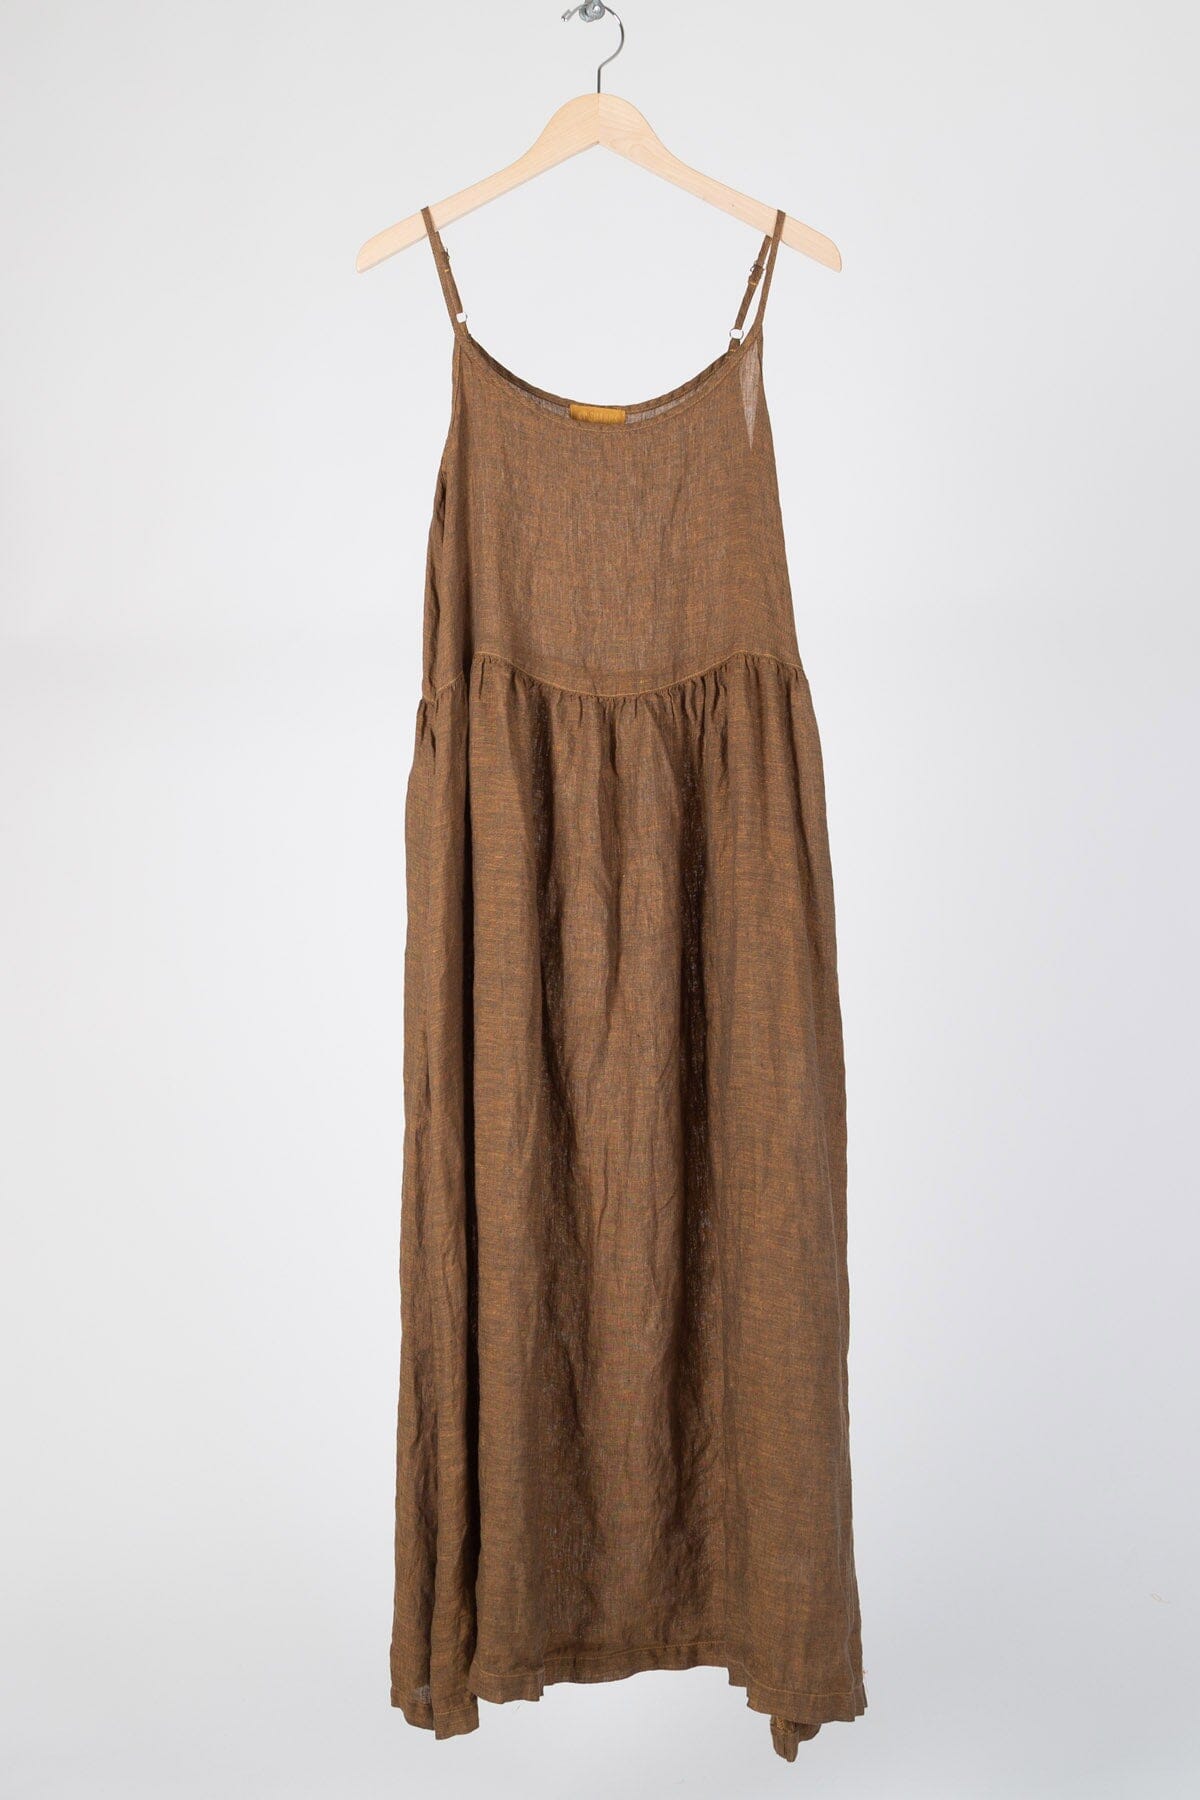 Hazel - Iridescent Linen S16 - Iridescent Skirts/Dresses CP Shades honey mustard 162